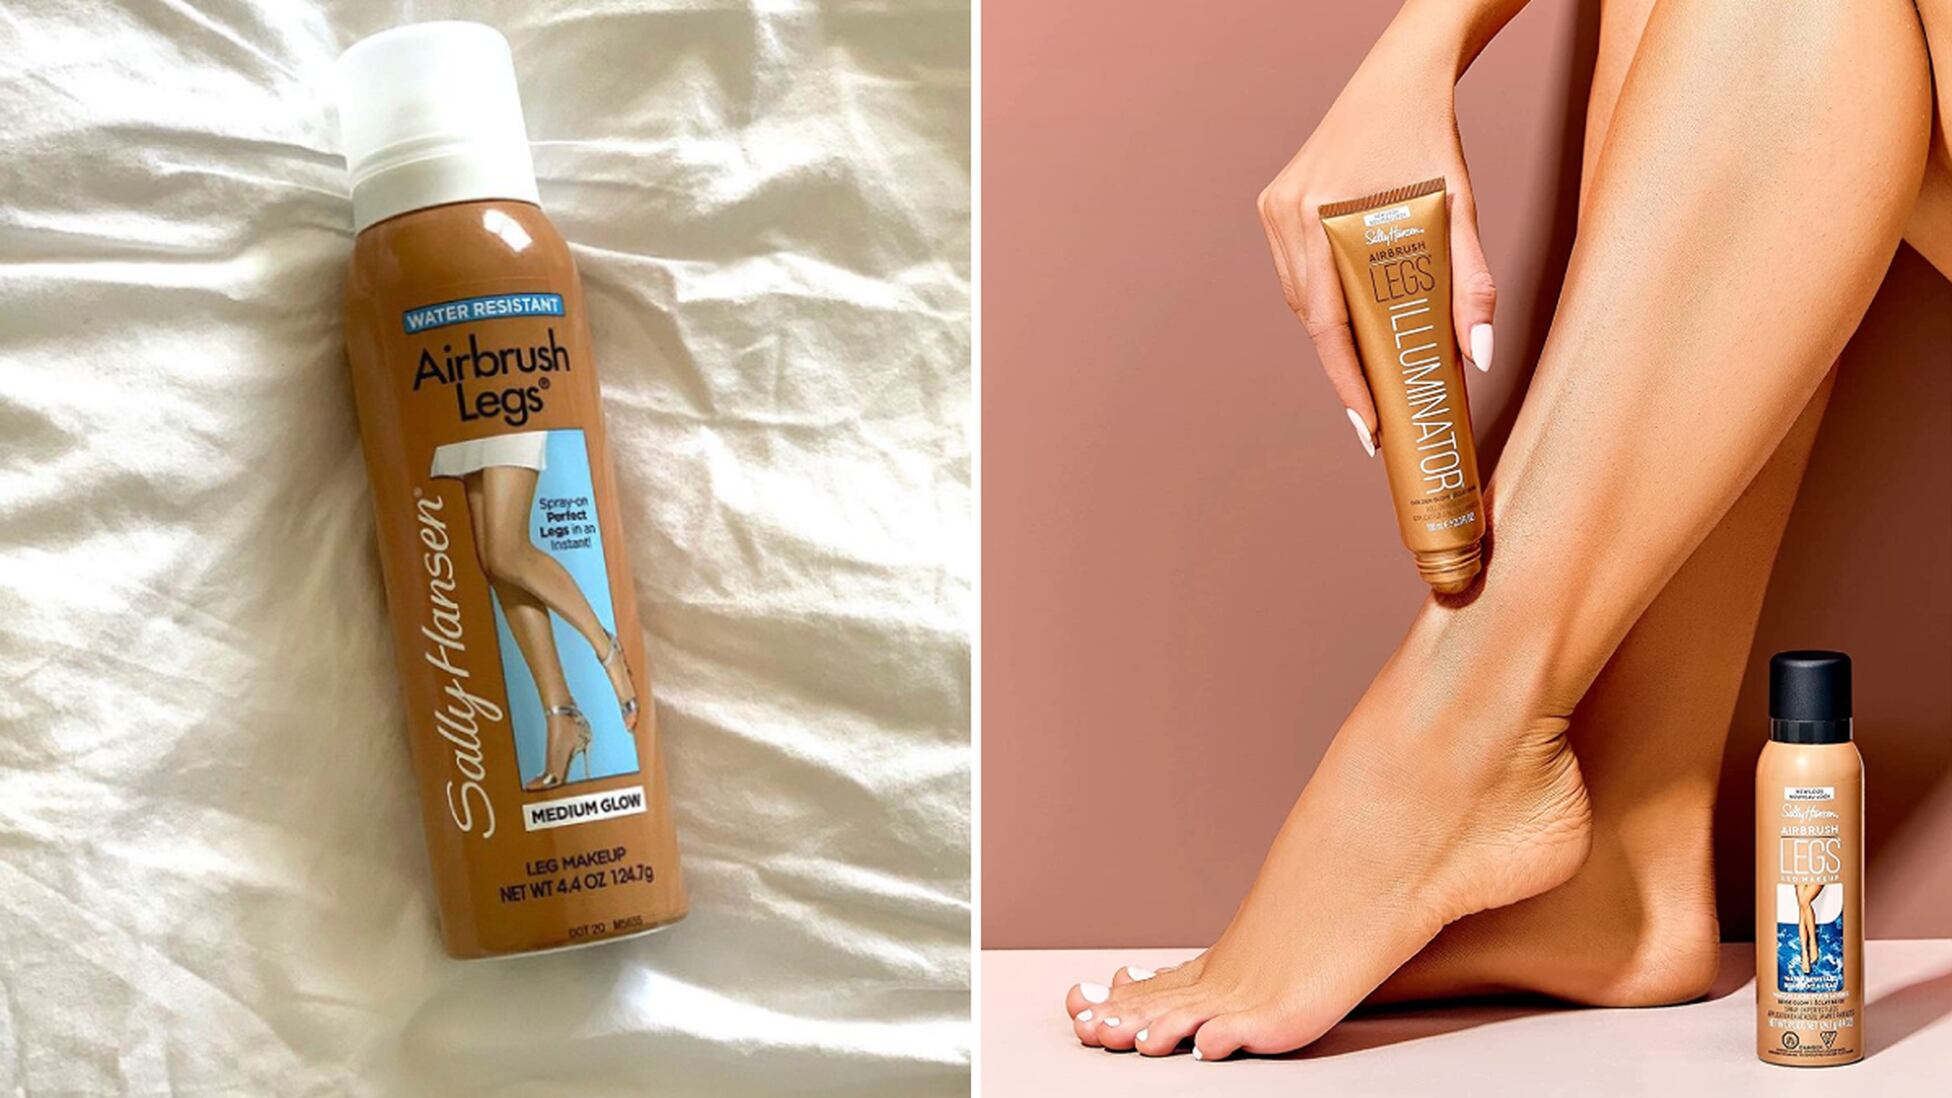 Este maquillaje para piernas disimula las imperfecciones “como el  Photoshop” - Showroom